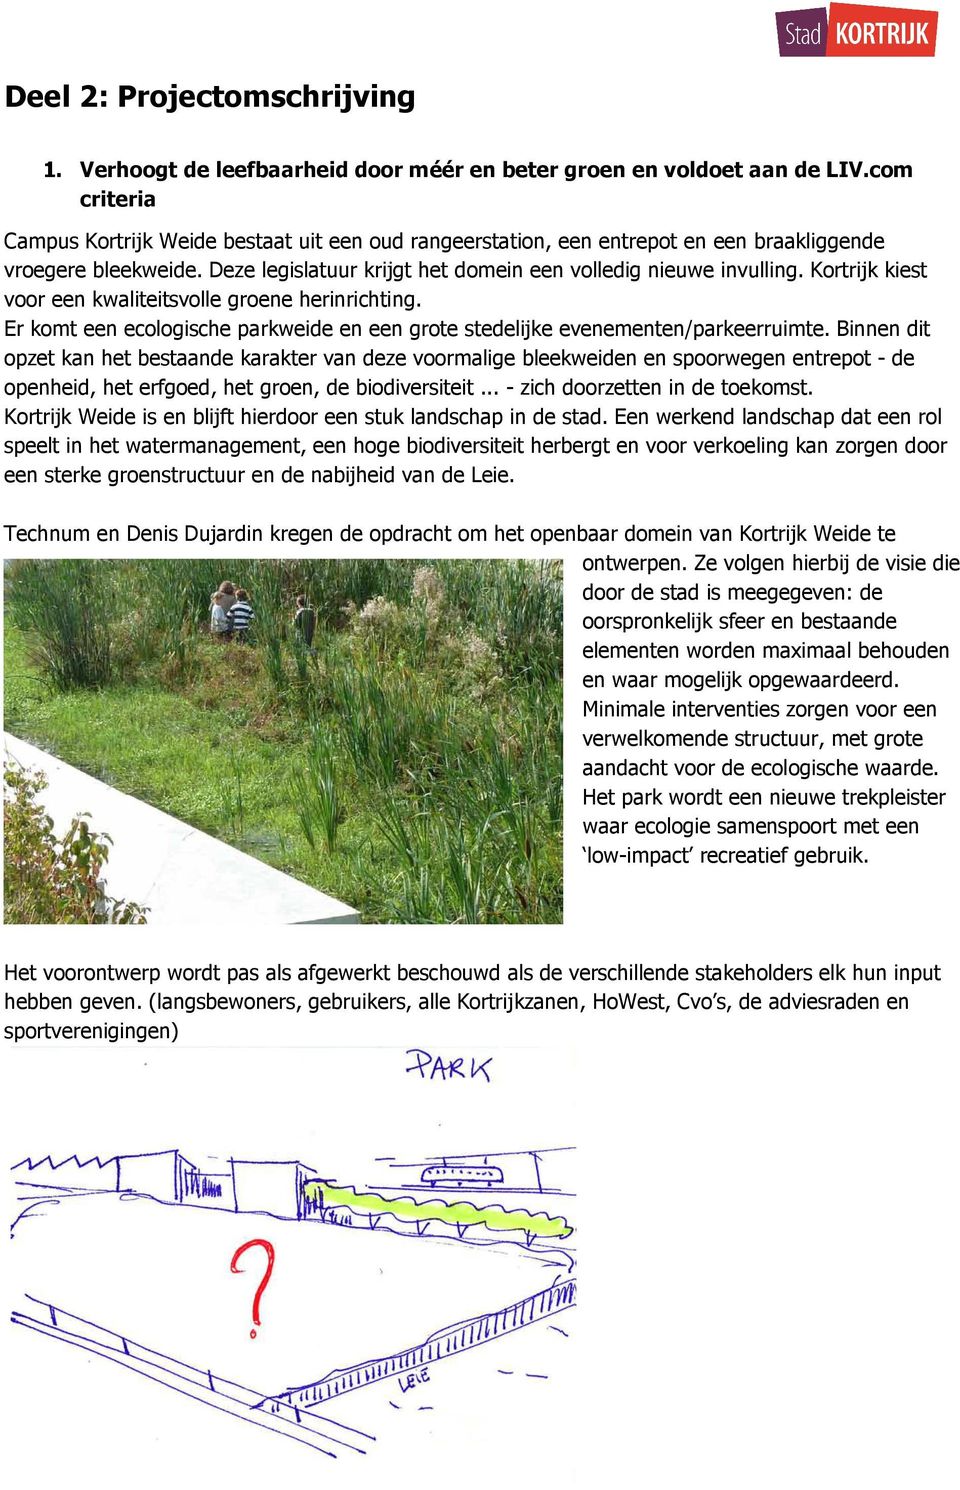 Kortrijk kiest voor een kwaliteitsvolle groene herinrichting. Er komt een ecologische parkweide en een grote stedelijke evenementen/parkeerruimte.